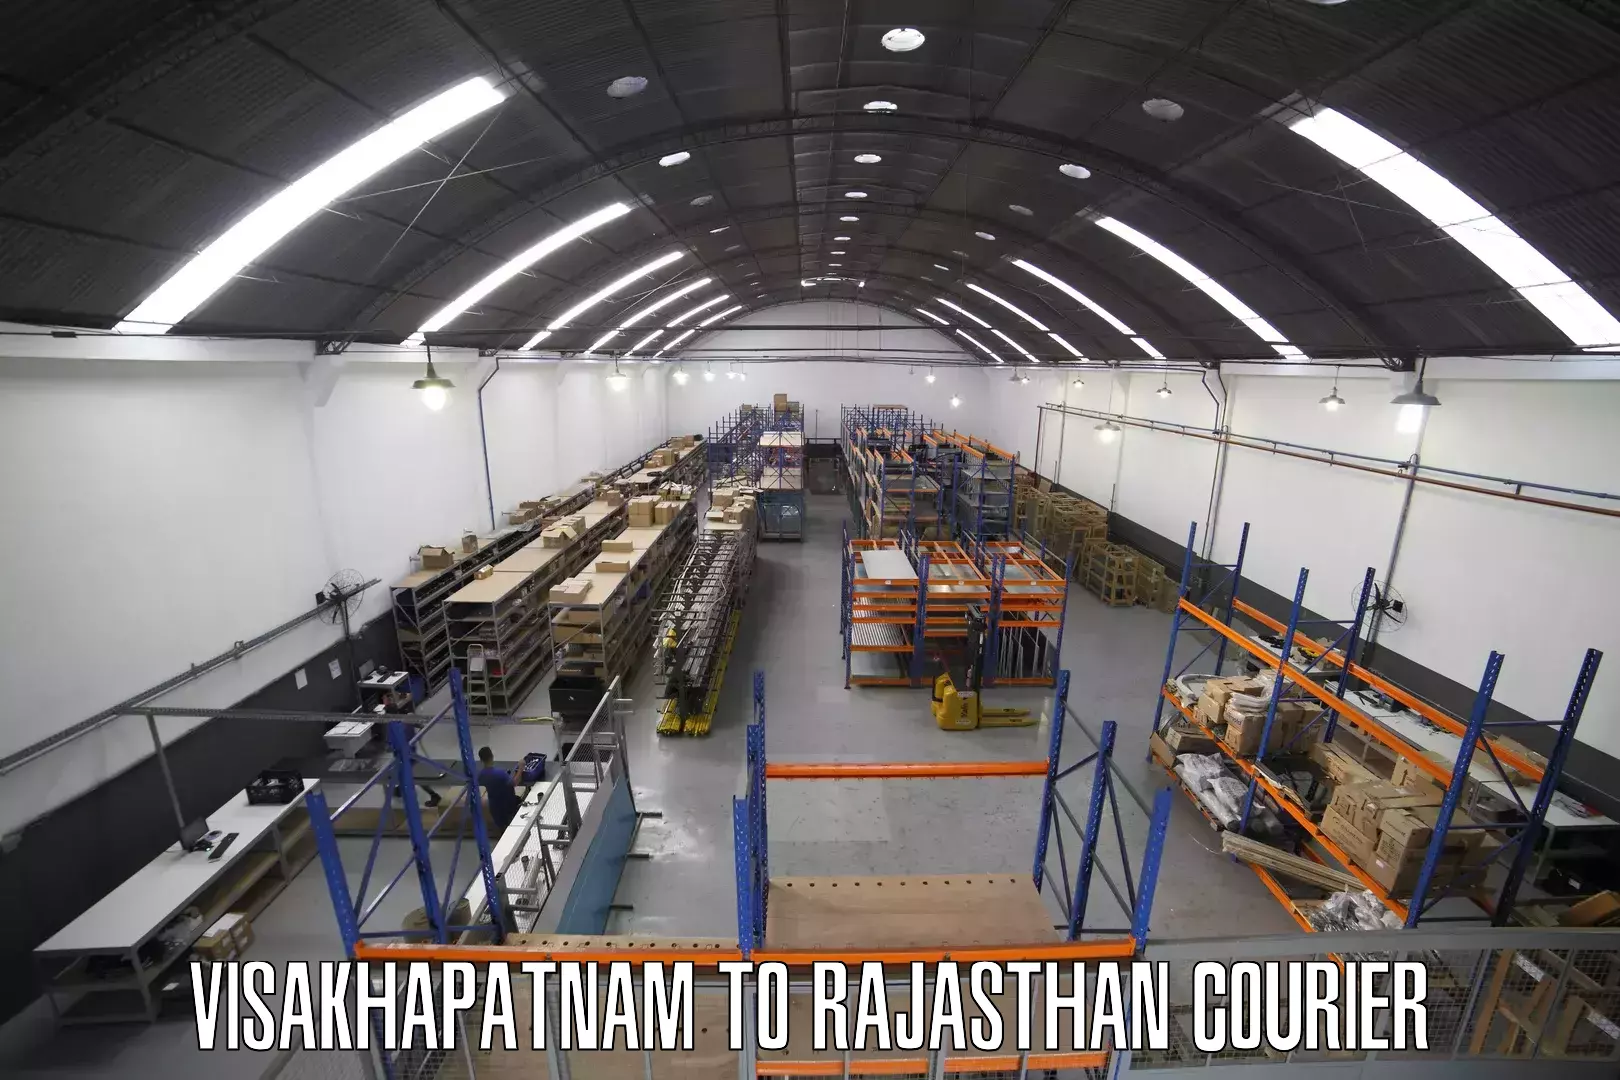 Digital shipping tools Visakhapatnam to Bayana